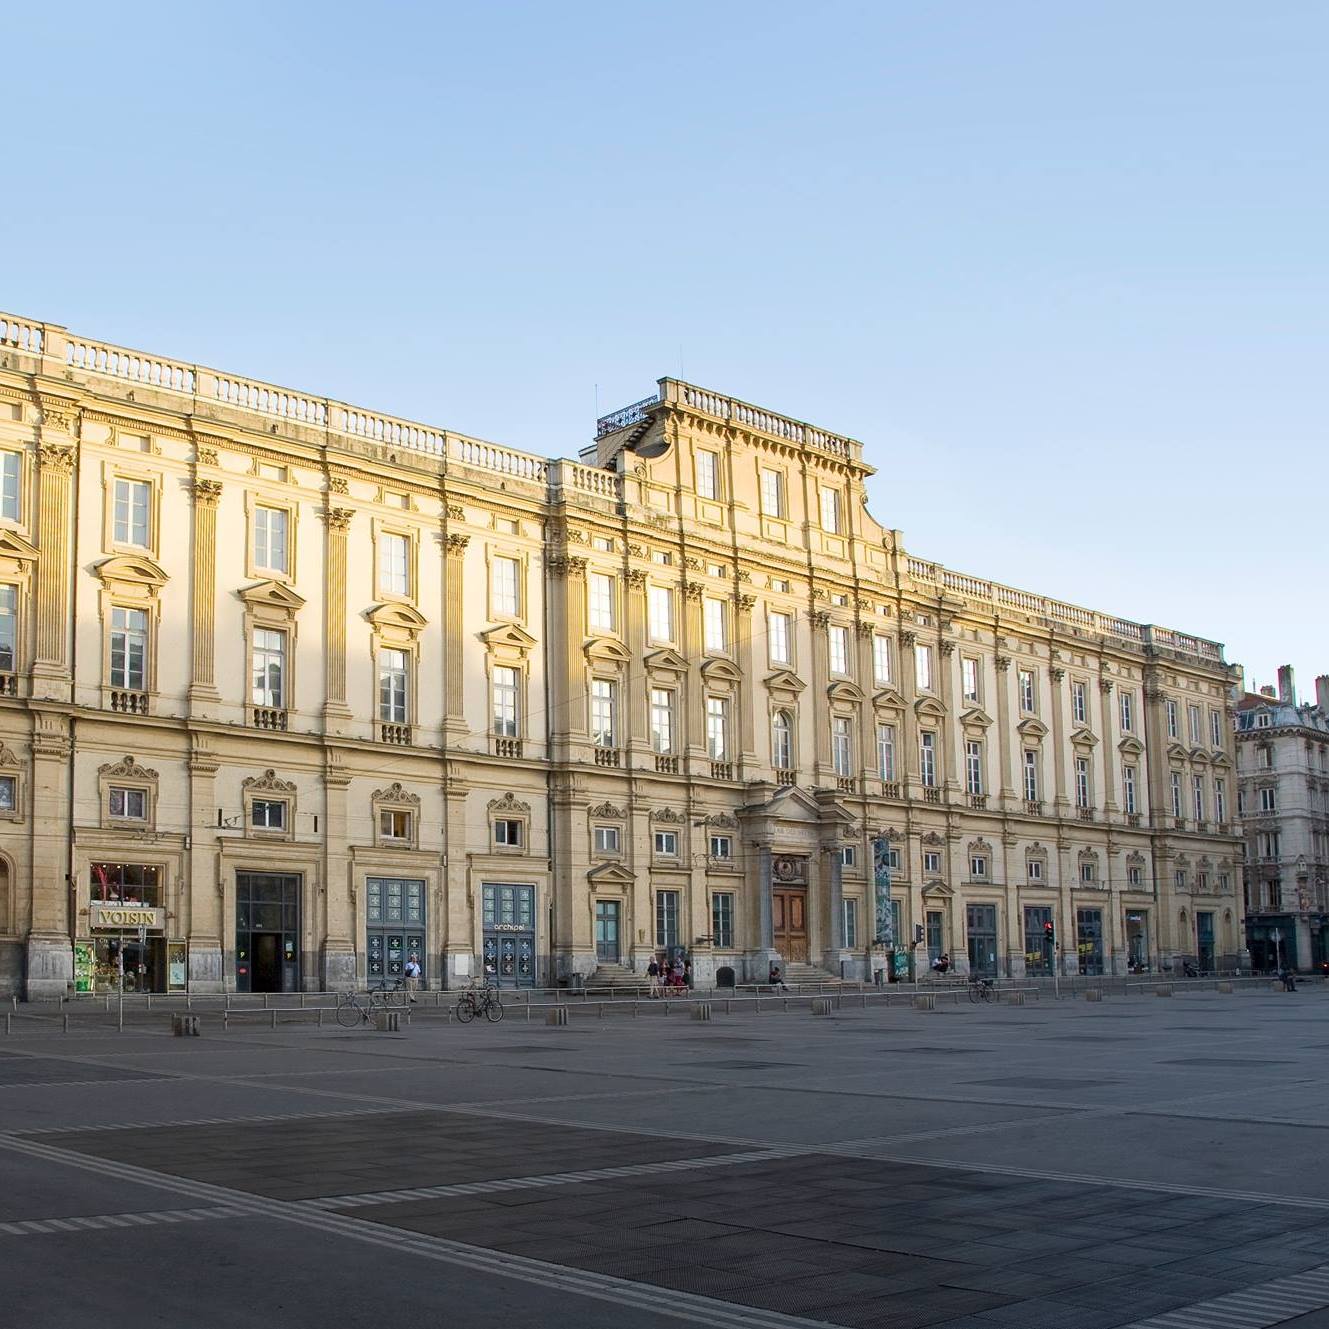 Musée des beaux-arts de Lyon